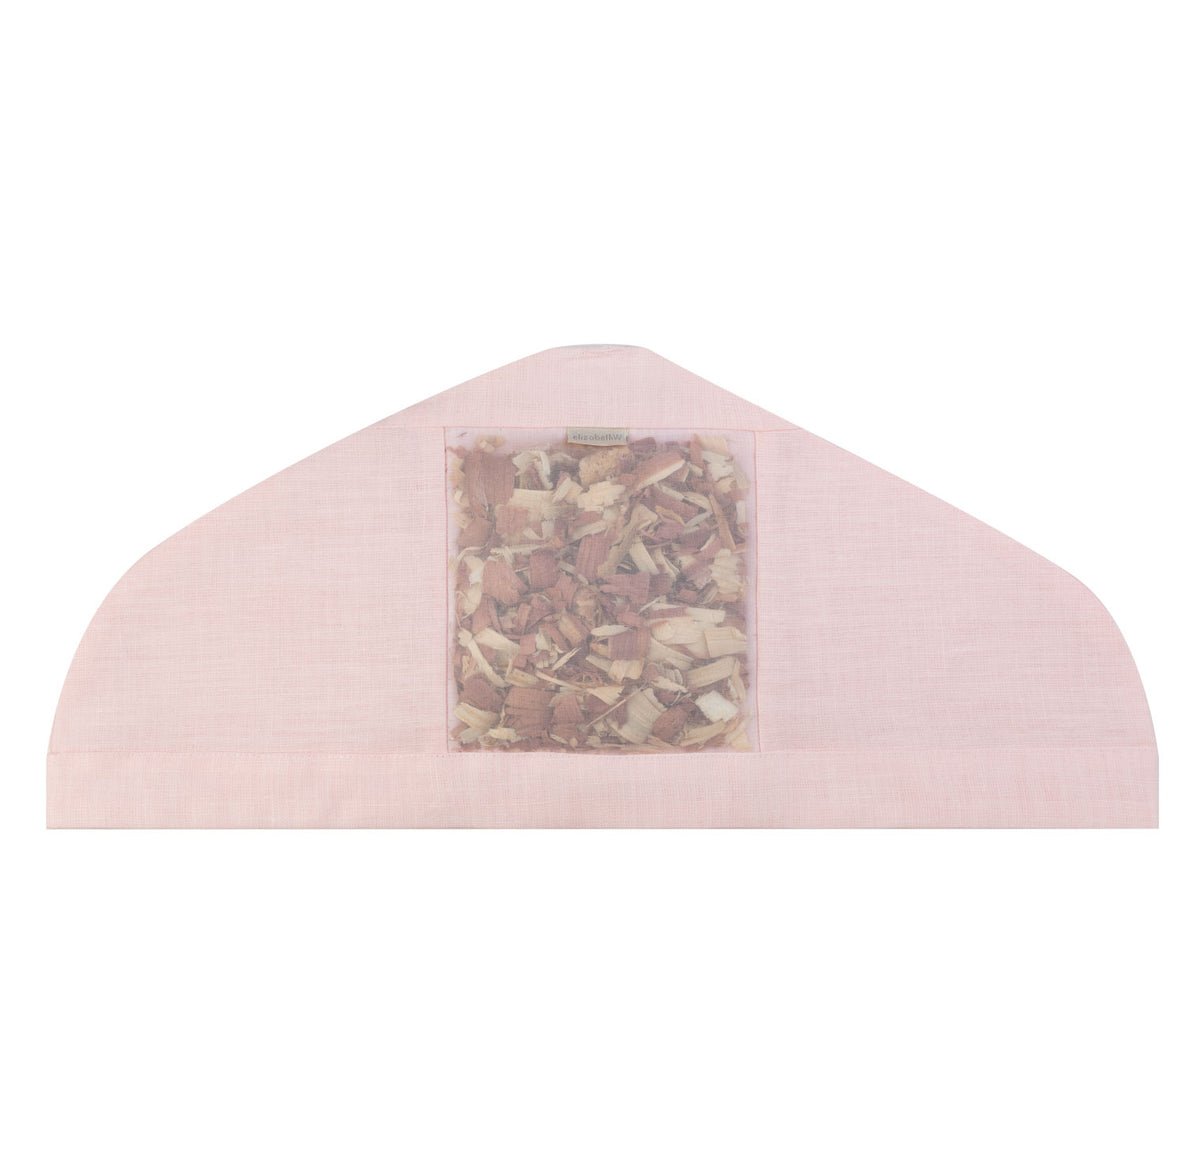 Cedar filled in a pink linen hanger cover